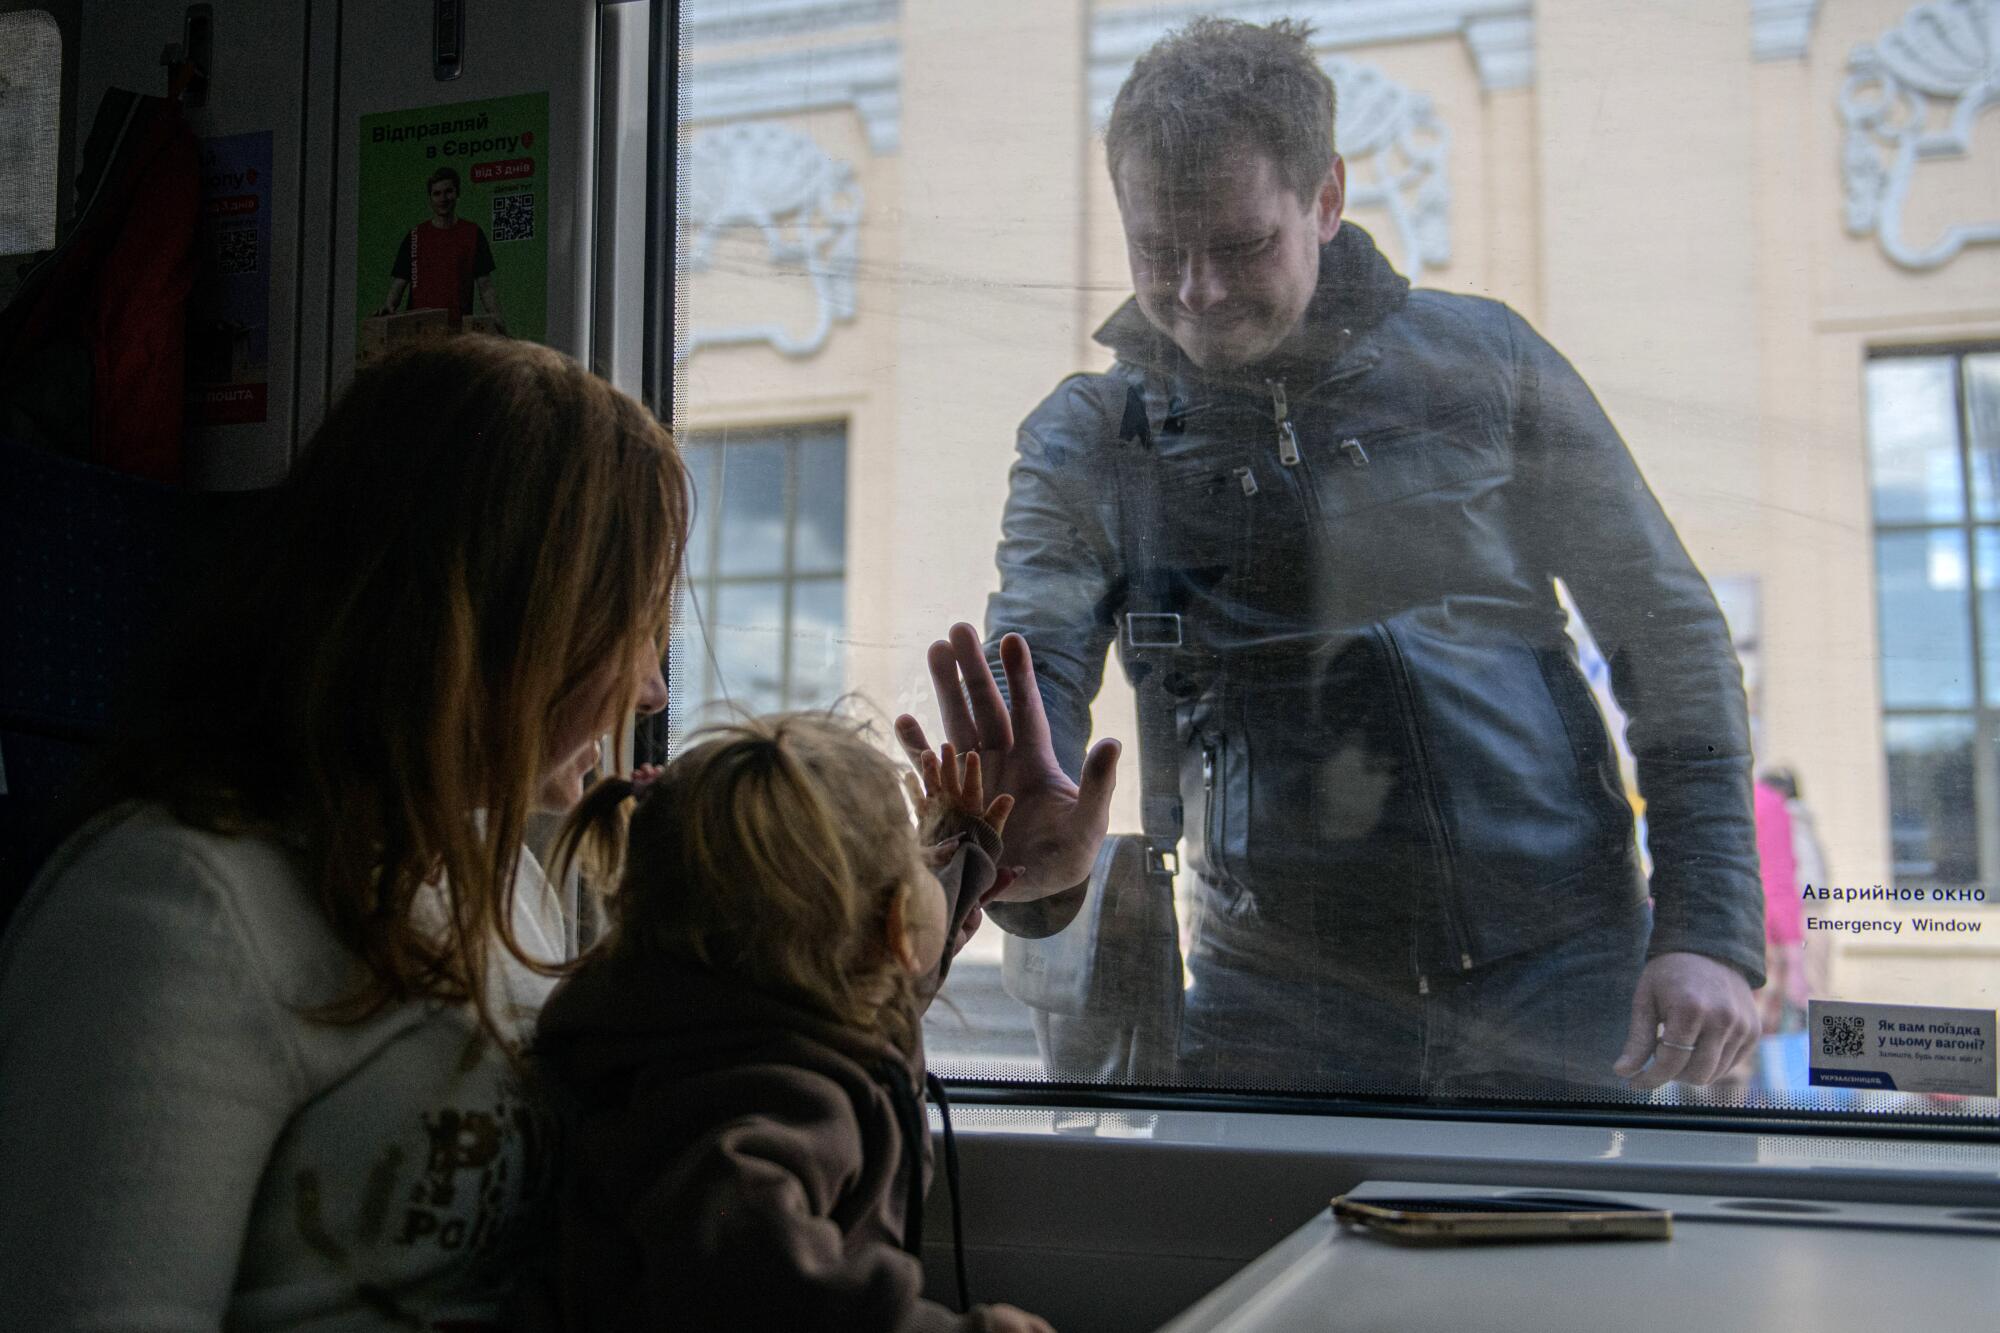 一名男子将手掌放在将他与一名妇女和儿童隔开的玻璃窗上，而妇女和儿童则将她的手掌放在了他的手掌上。